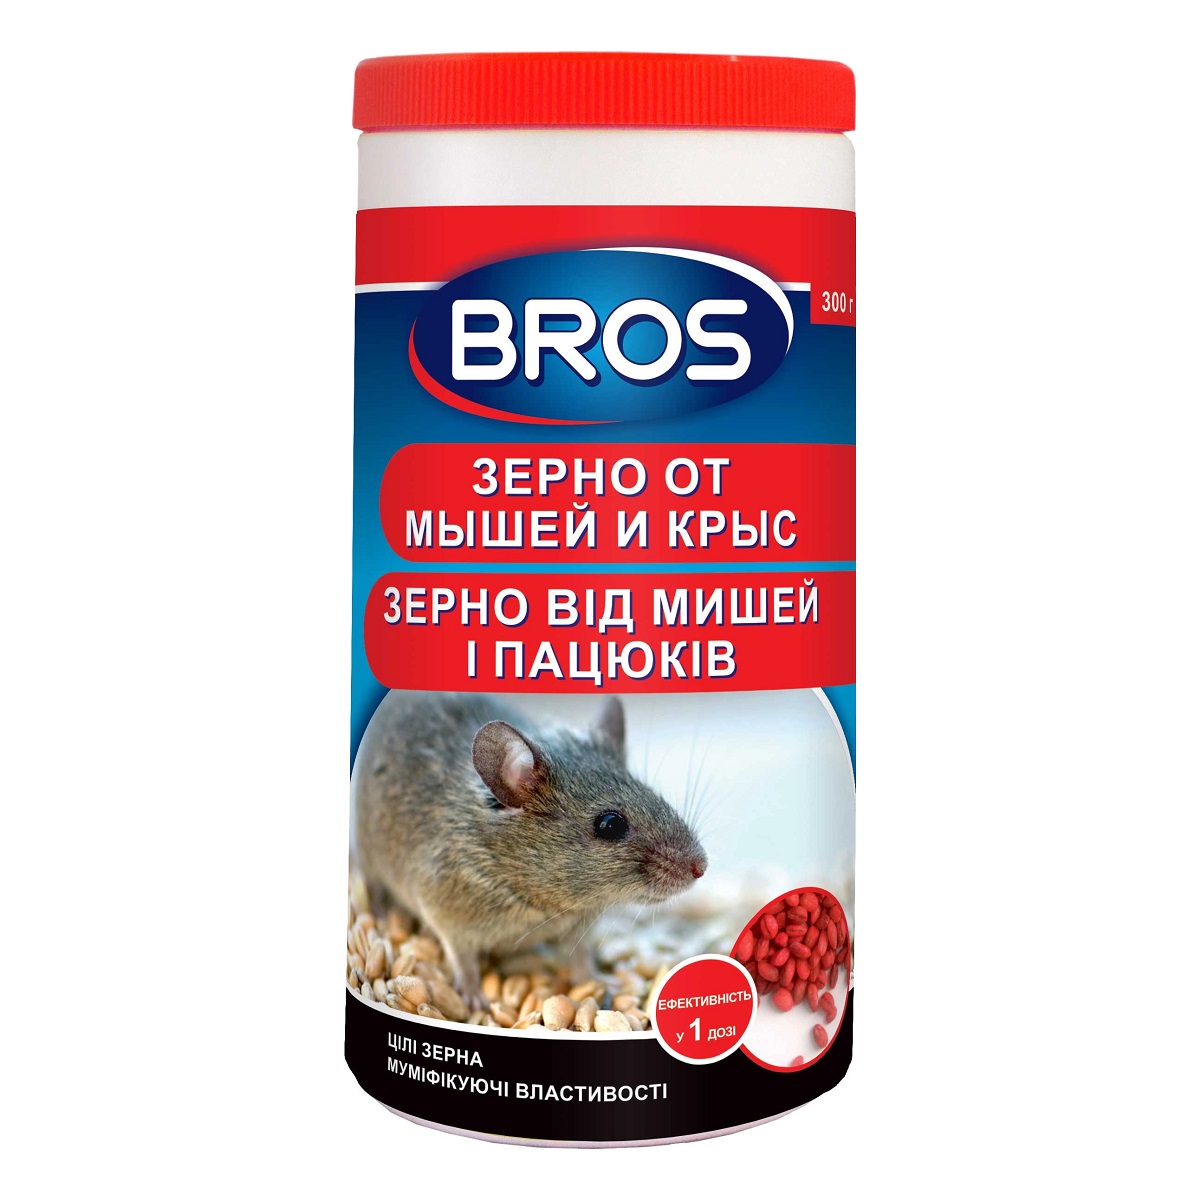 Зерно от мышей и крыс Bros 300 г / Брос